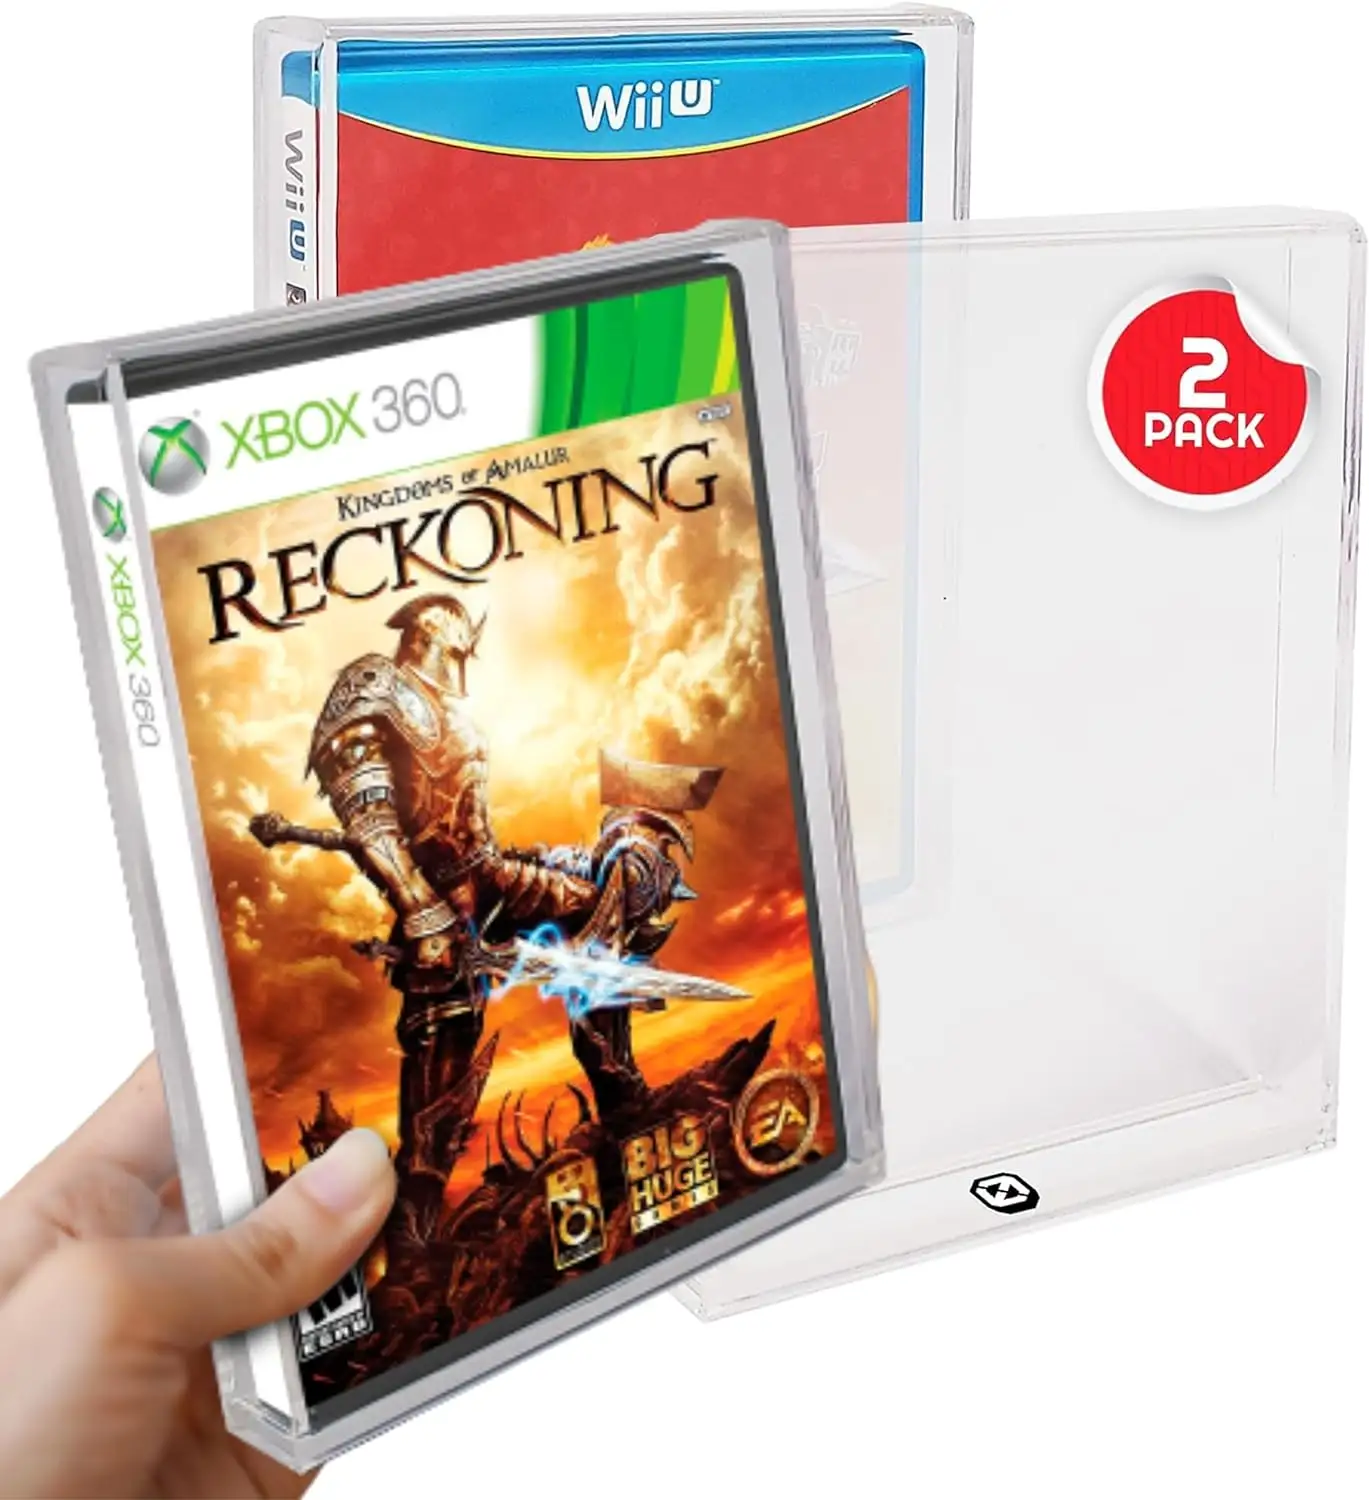 सोनी प्लेस्टेशन डीवीडी Wii गेमक्यूब PS2 Xbox360 के लिए स्लाइडिंग ढक्कन ऐक्रेलिक बॉक्स